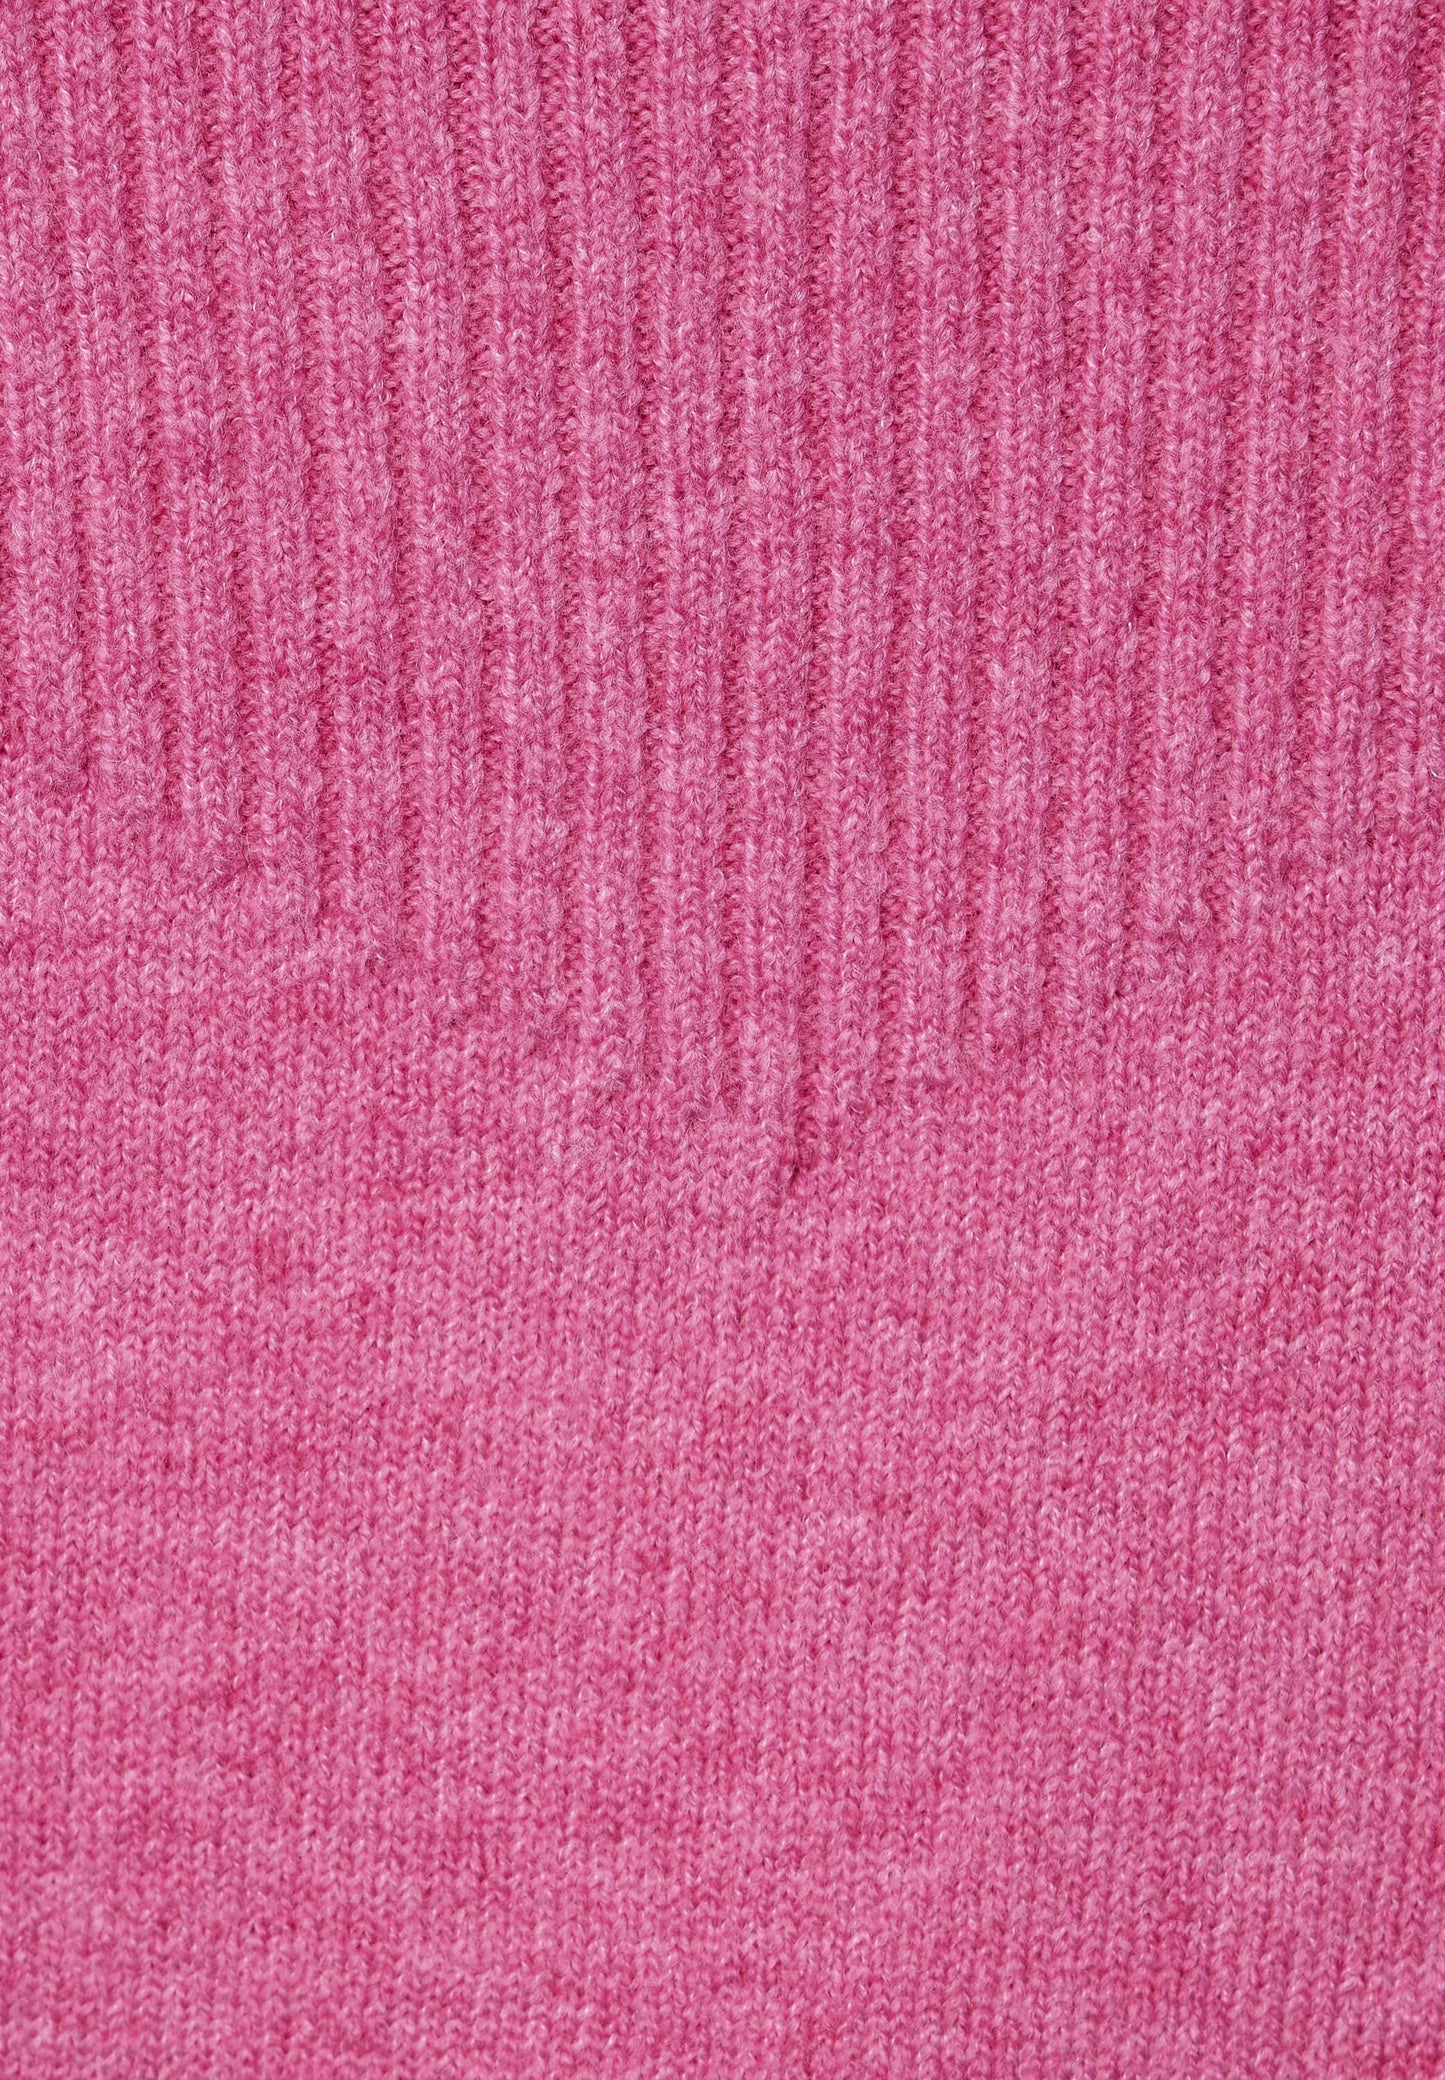 Street One - Pullover mit Rippstrick - cozy pink melange